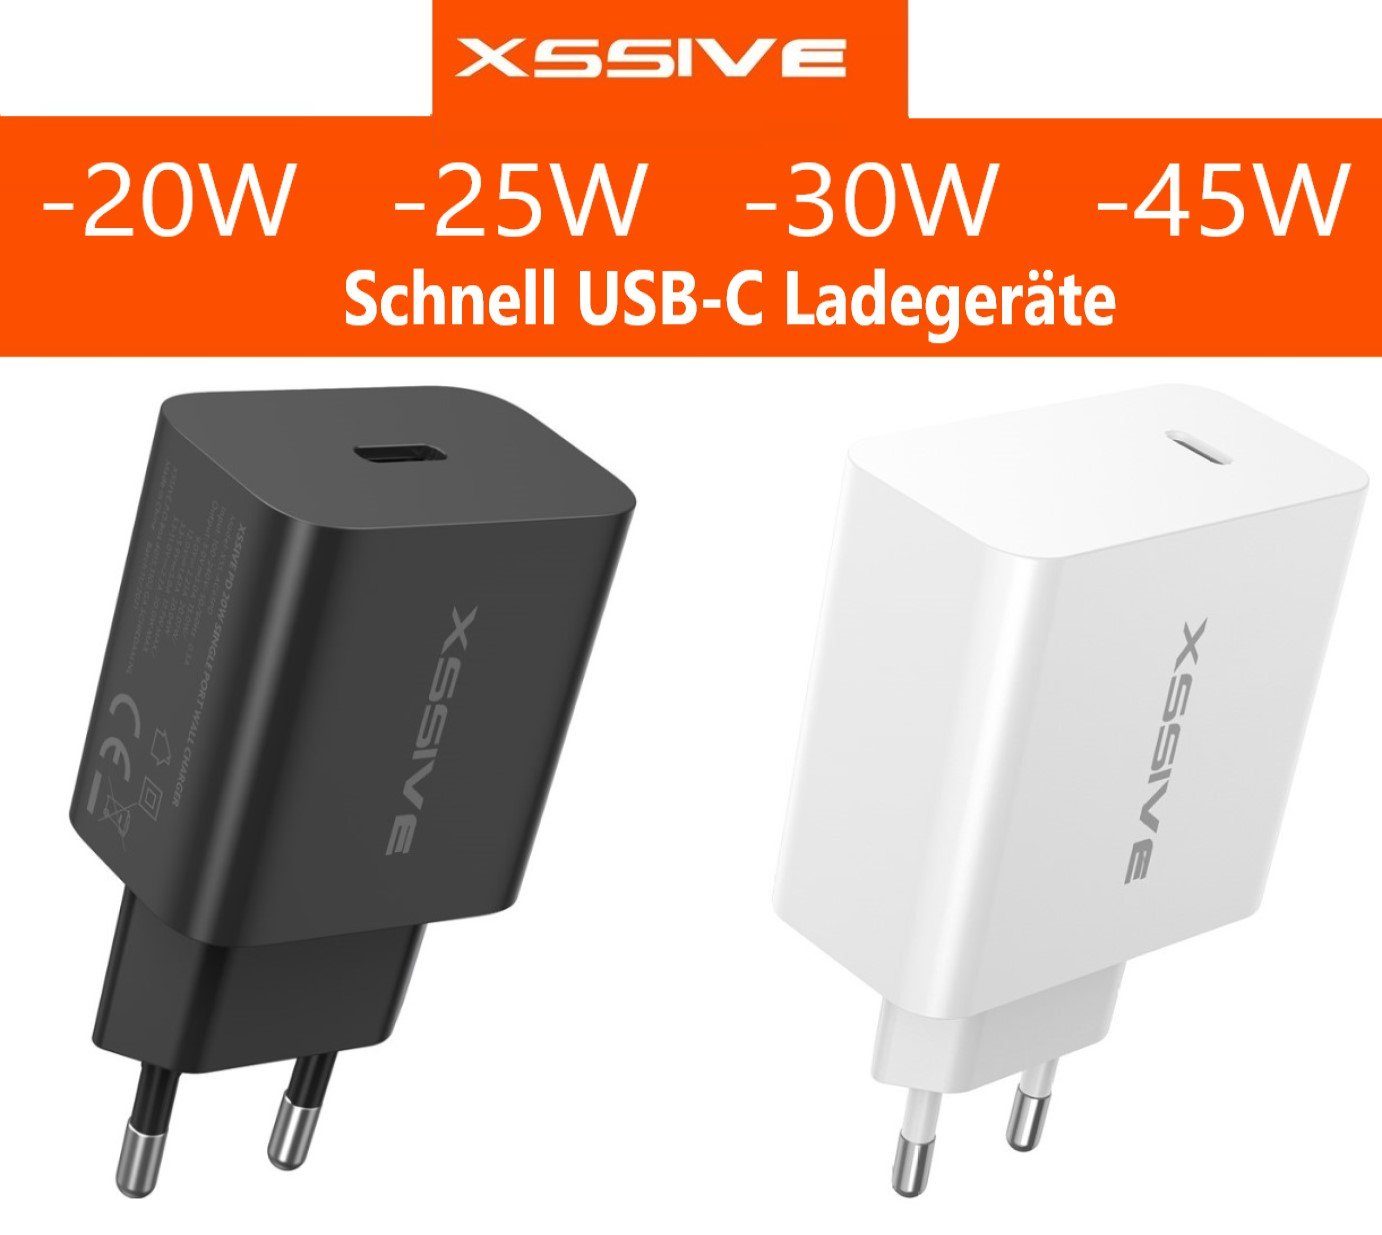 Xssive Universal Schnell UBC-C Ladegeräte 20W-25W-30W-45W für Handy Tablet Steckernetzteil (PD Schnell Ladegerät)